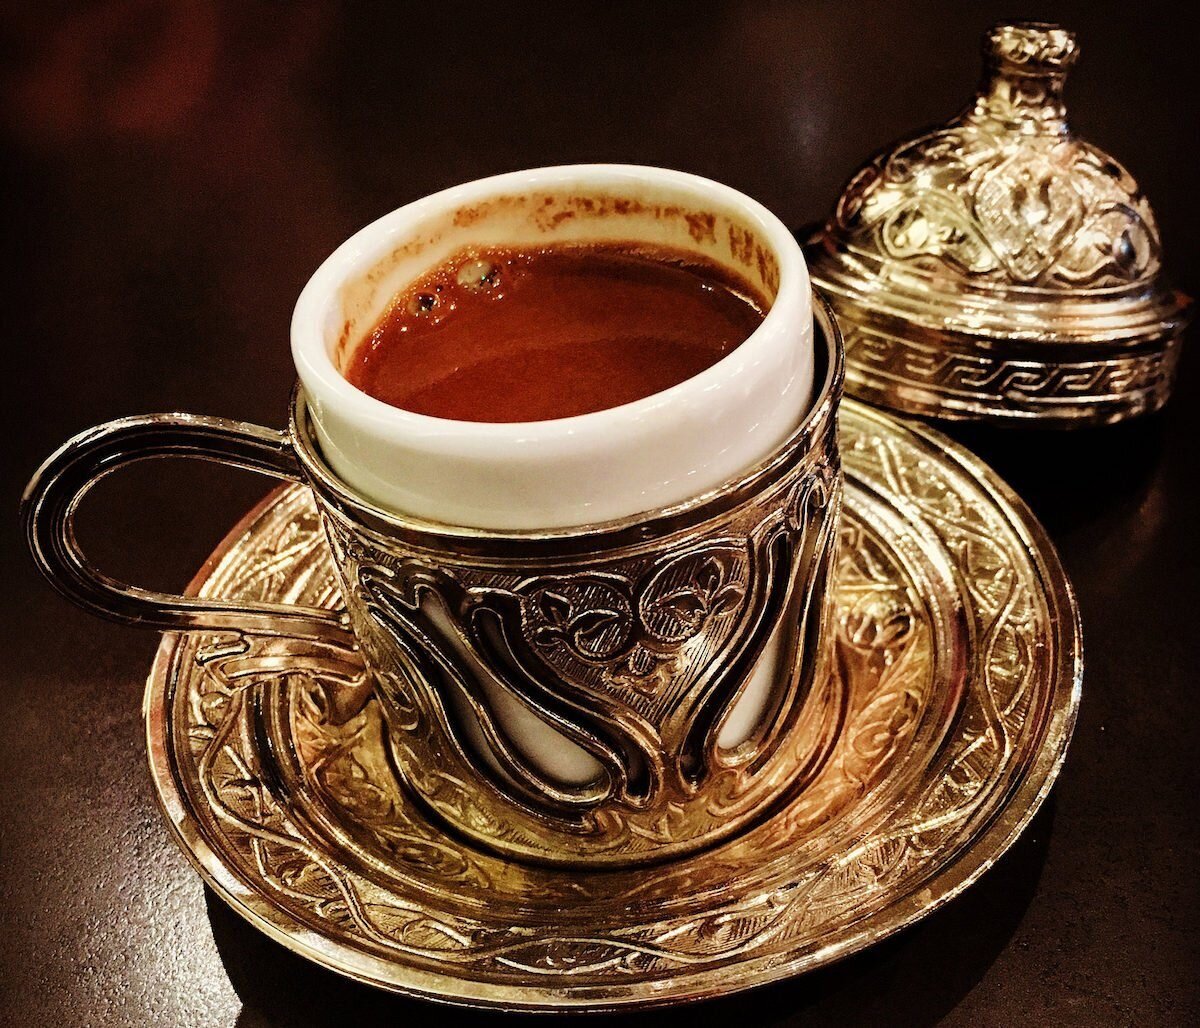 Турецкий кофе